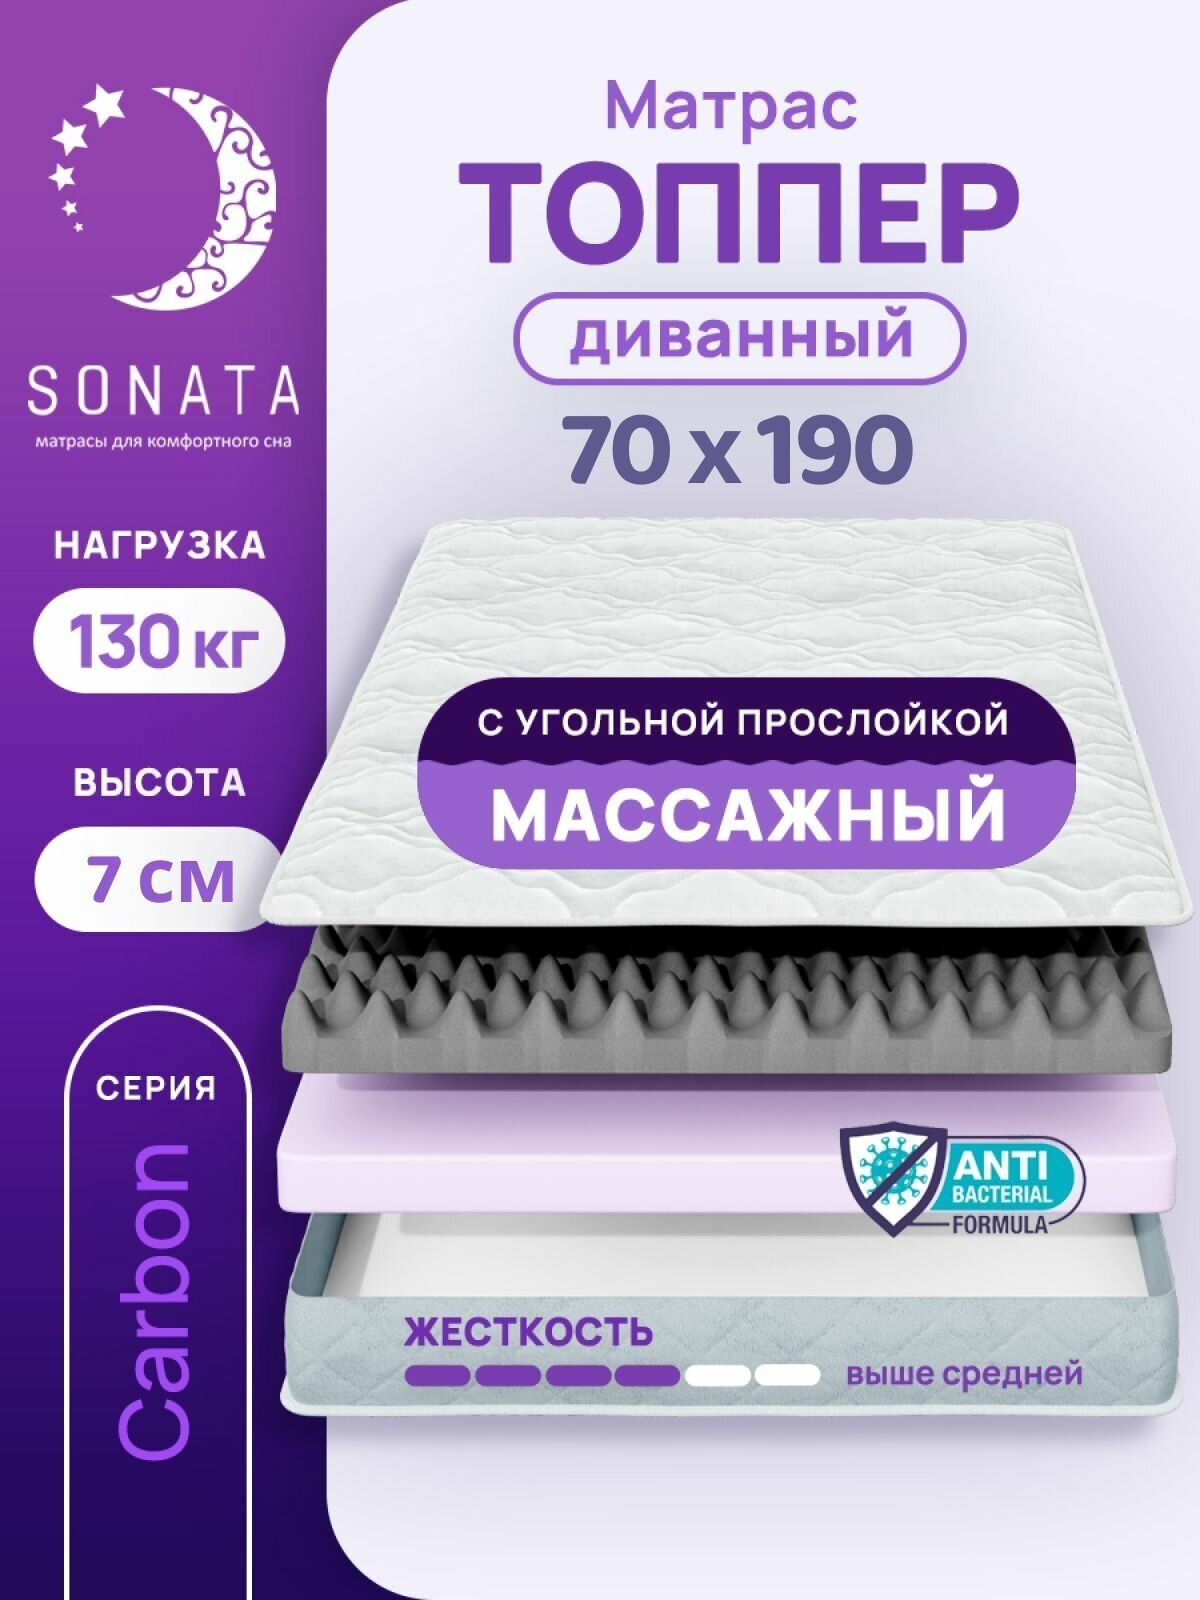 Топпер матрас 70х190 см SONATA, ортопедический, беспружинный, односпальный, тонкий матрац для дивана, кровати, высота 7 см с массажным эффектом